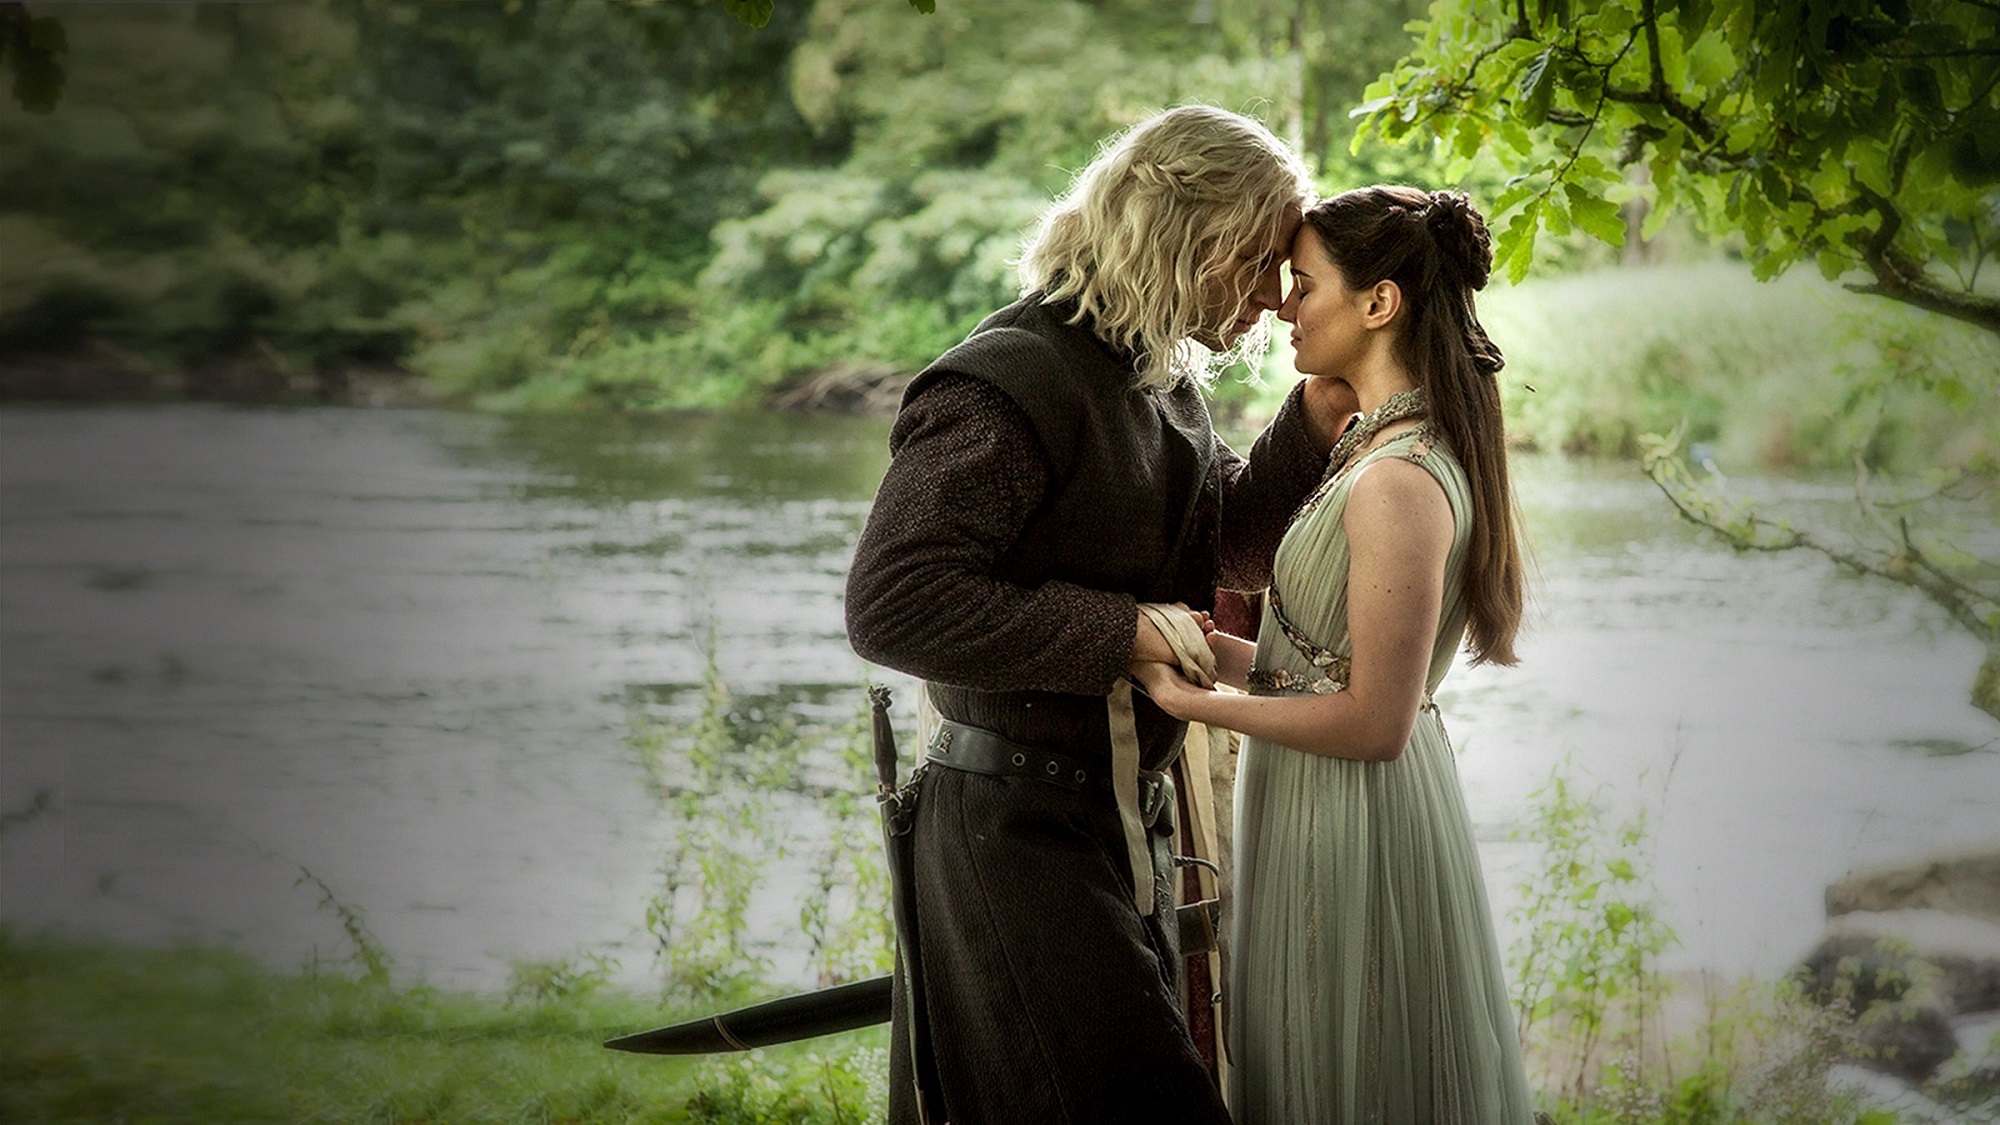 Rhaegar and Lyanna wedding